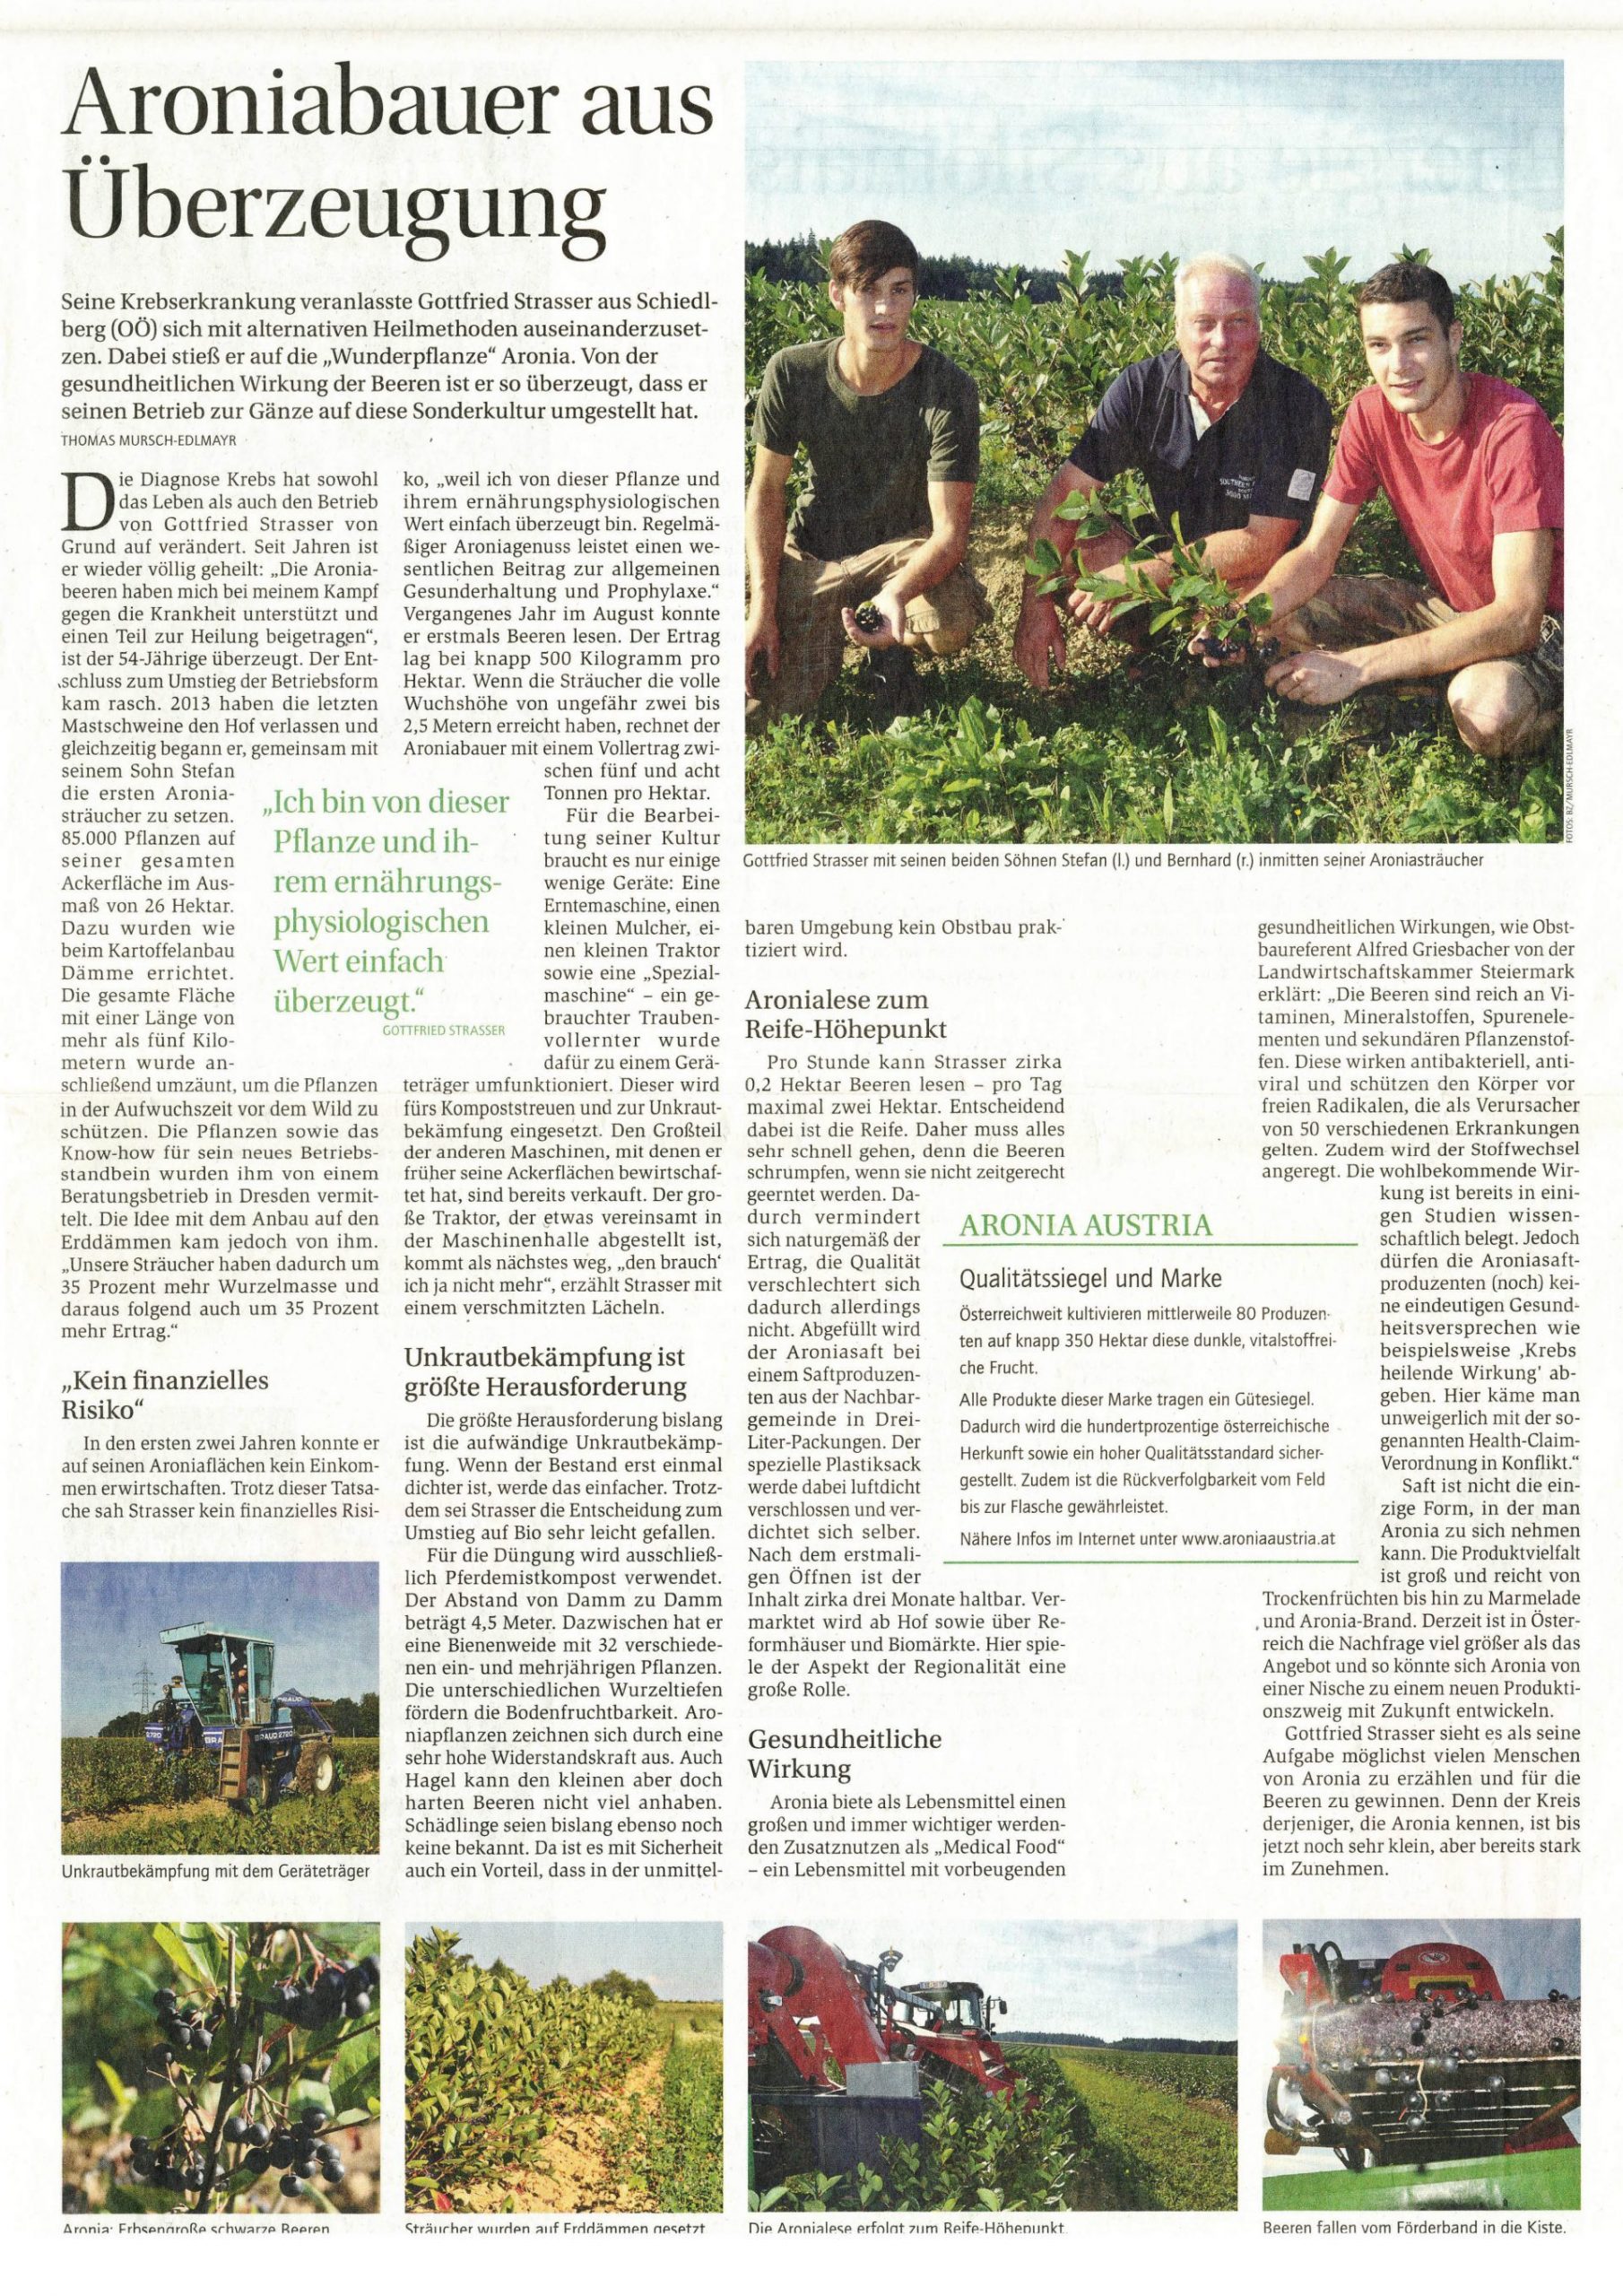 Reportage über AroniaGut in der Bauernzeitung